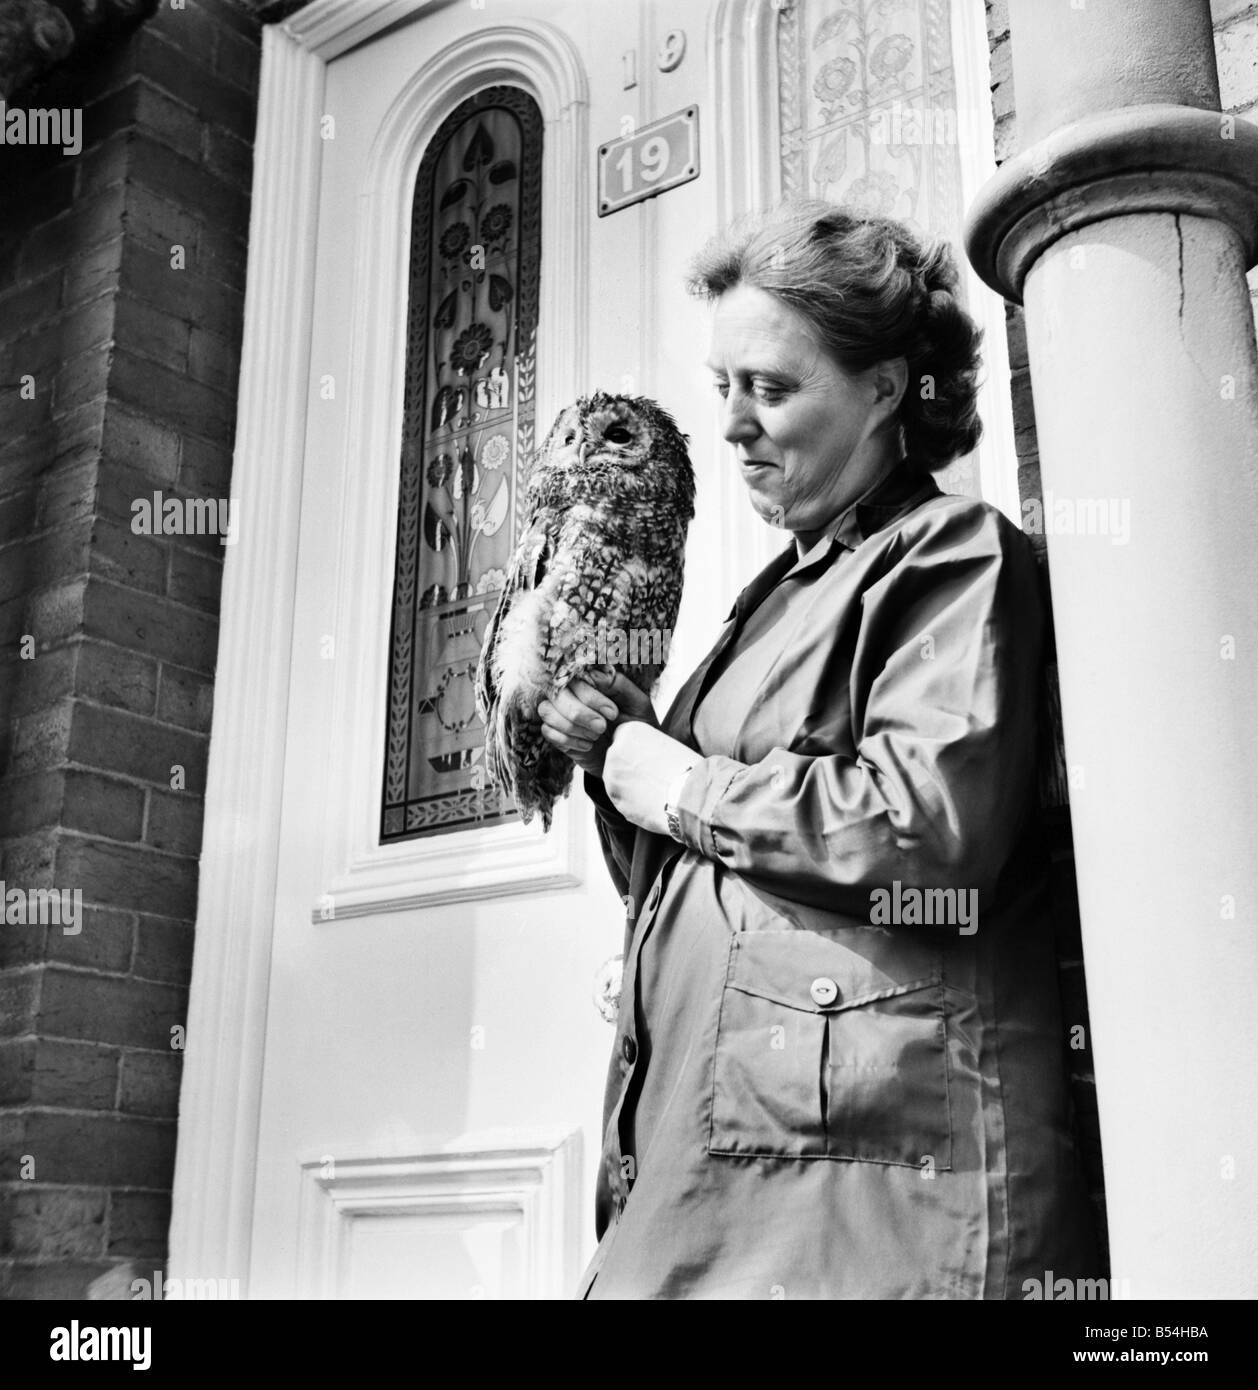 Les oiseaux de proie femme tenant un hibou, nommé huileuse, lors des trois hiboux Bird Sanctuary. &# 13 ;&# 10;Octobre 1969 &# 13 ;&# 10;Z10486 Banque D'Images